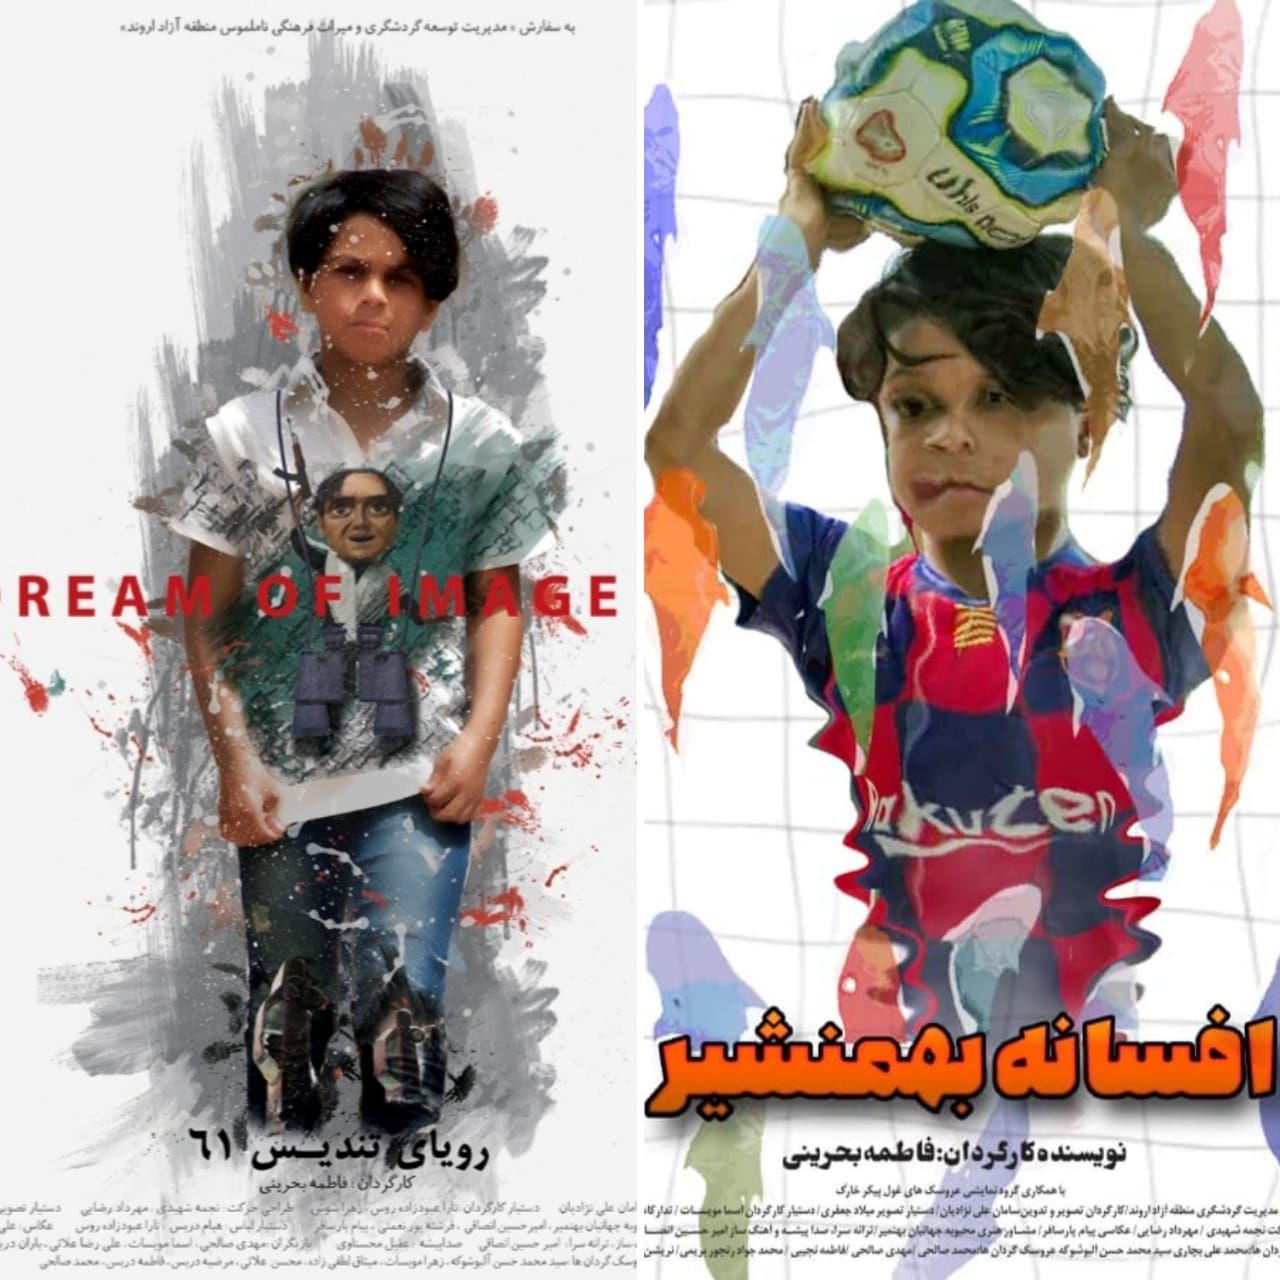 رونمایی از پوستر دو فیلم با موضوع گردشگری در منطقه آزاد اروند